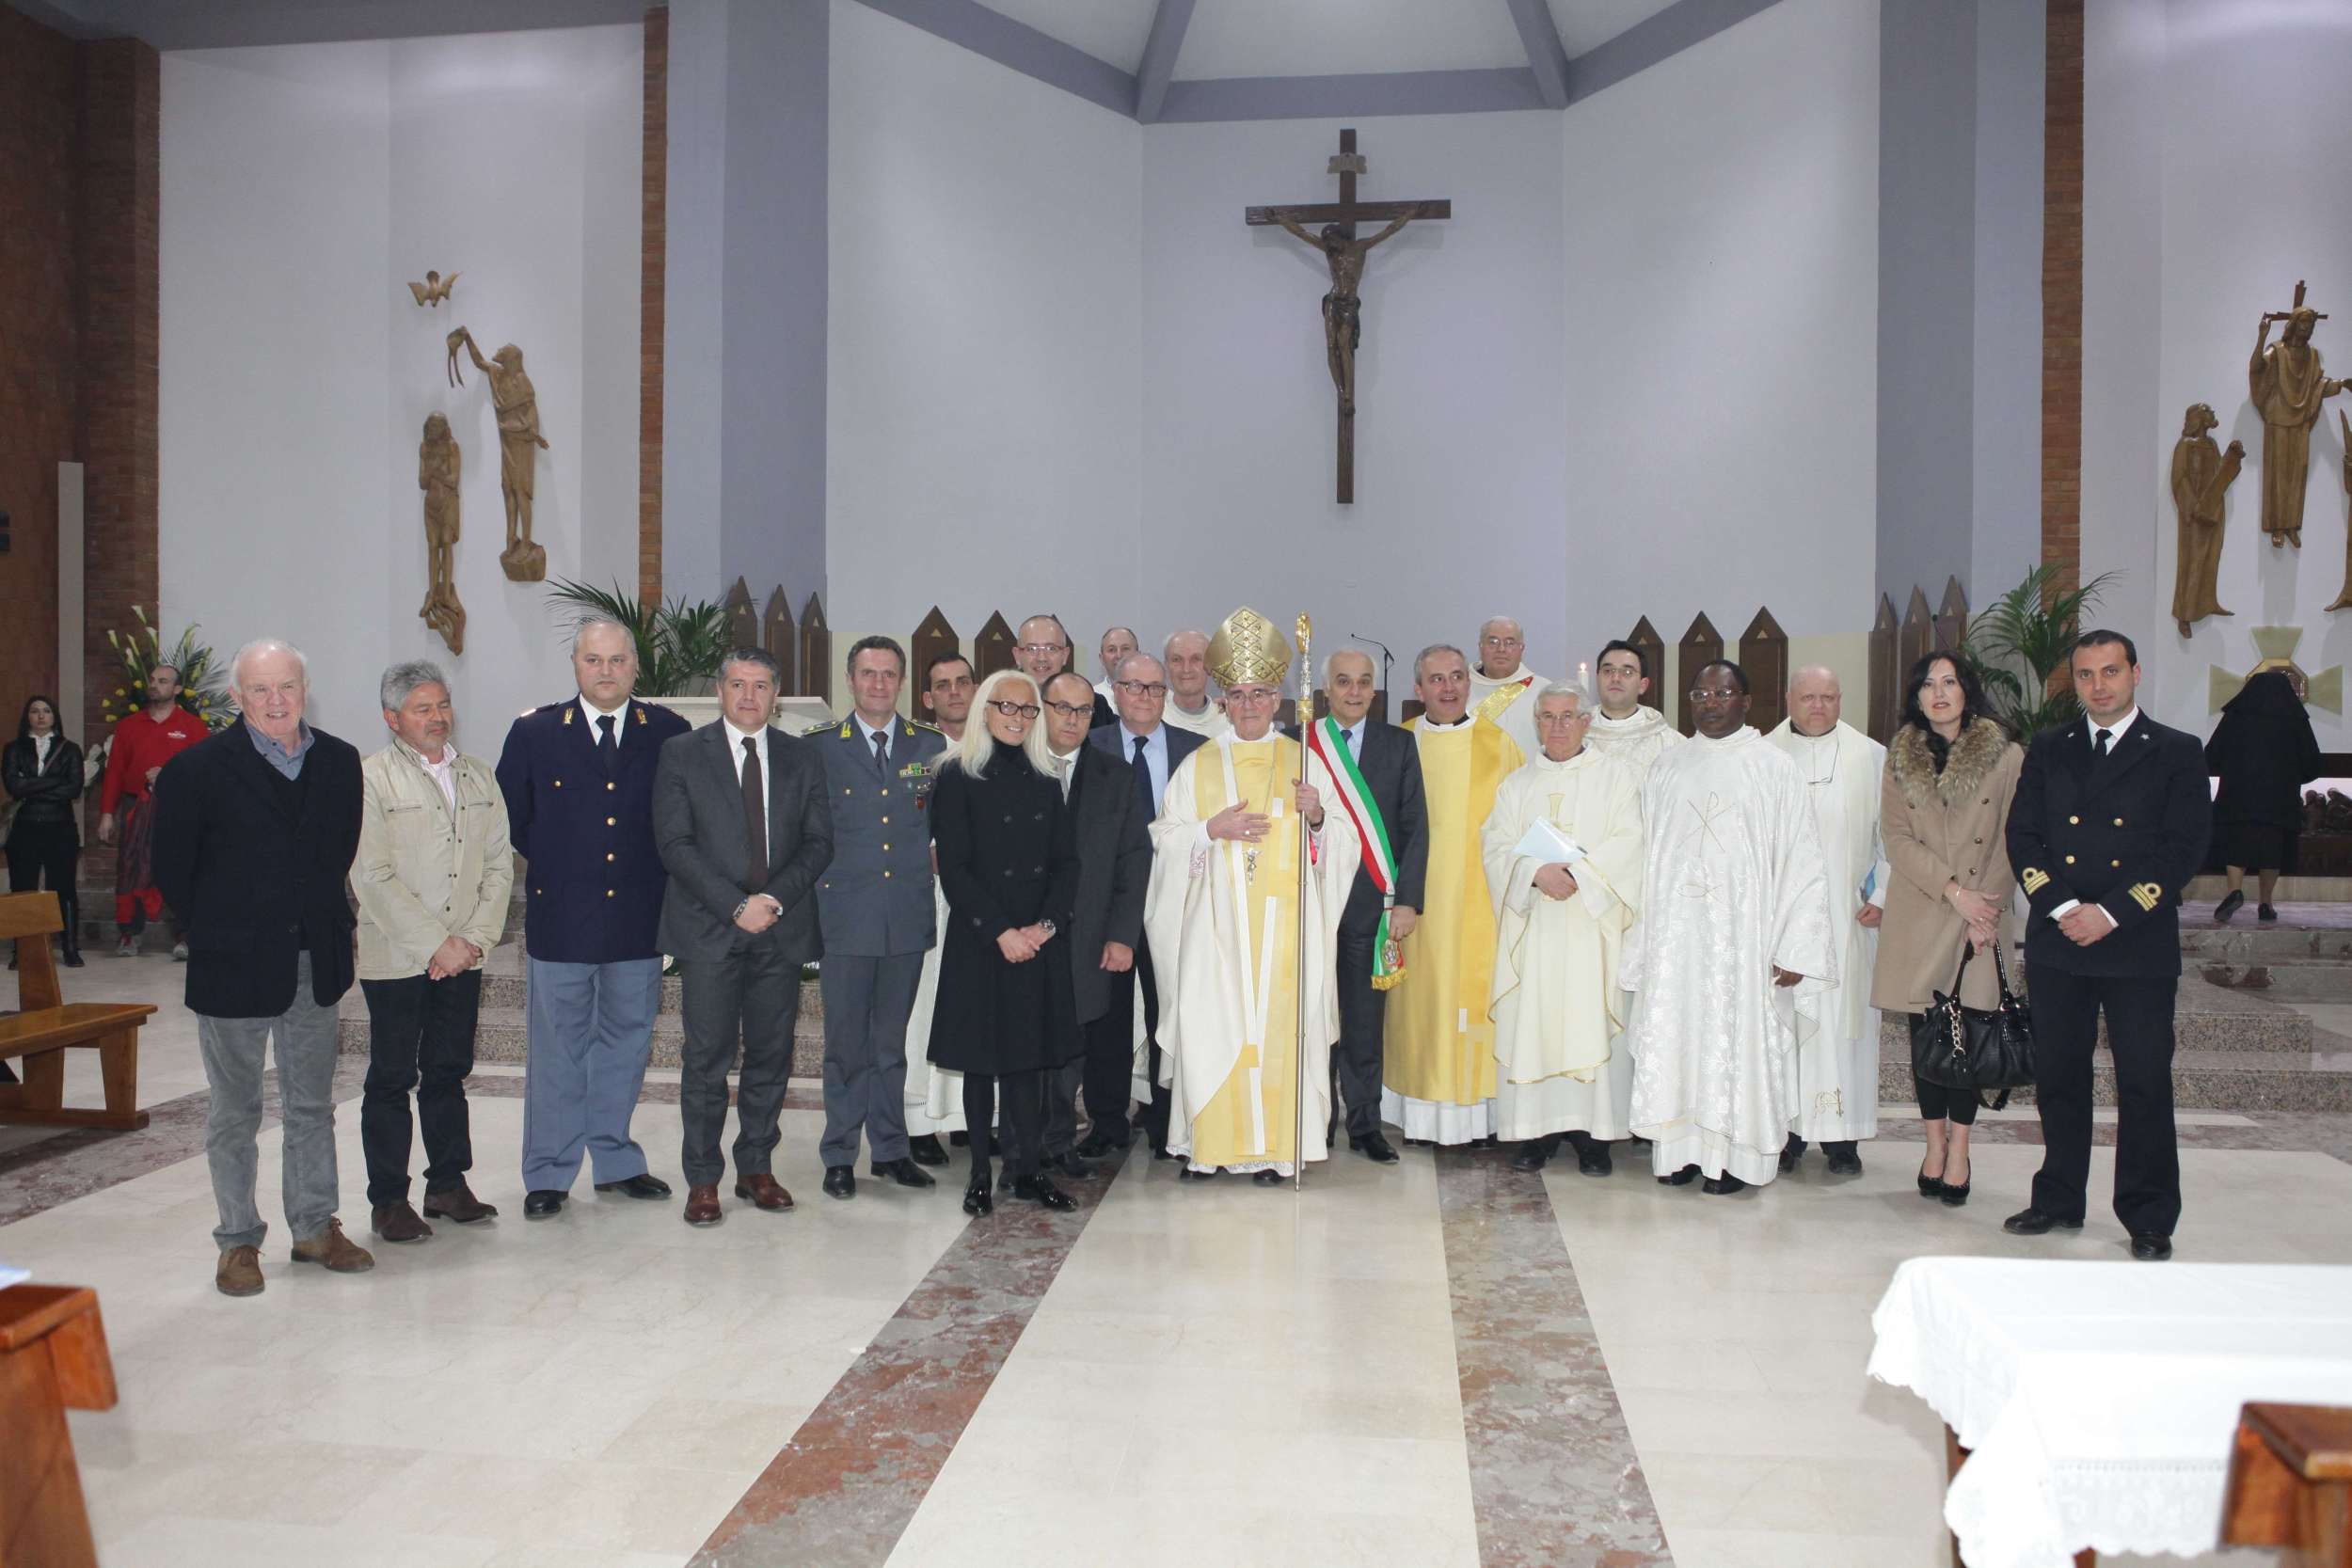 L'Arcivescovo con i sacerdoti e le autorità